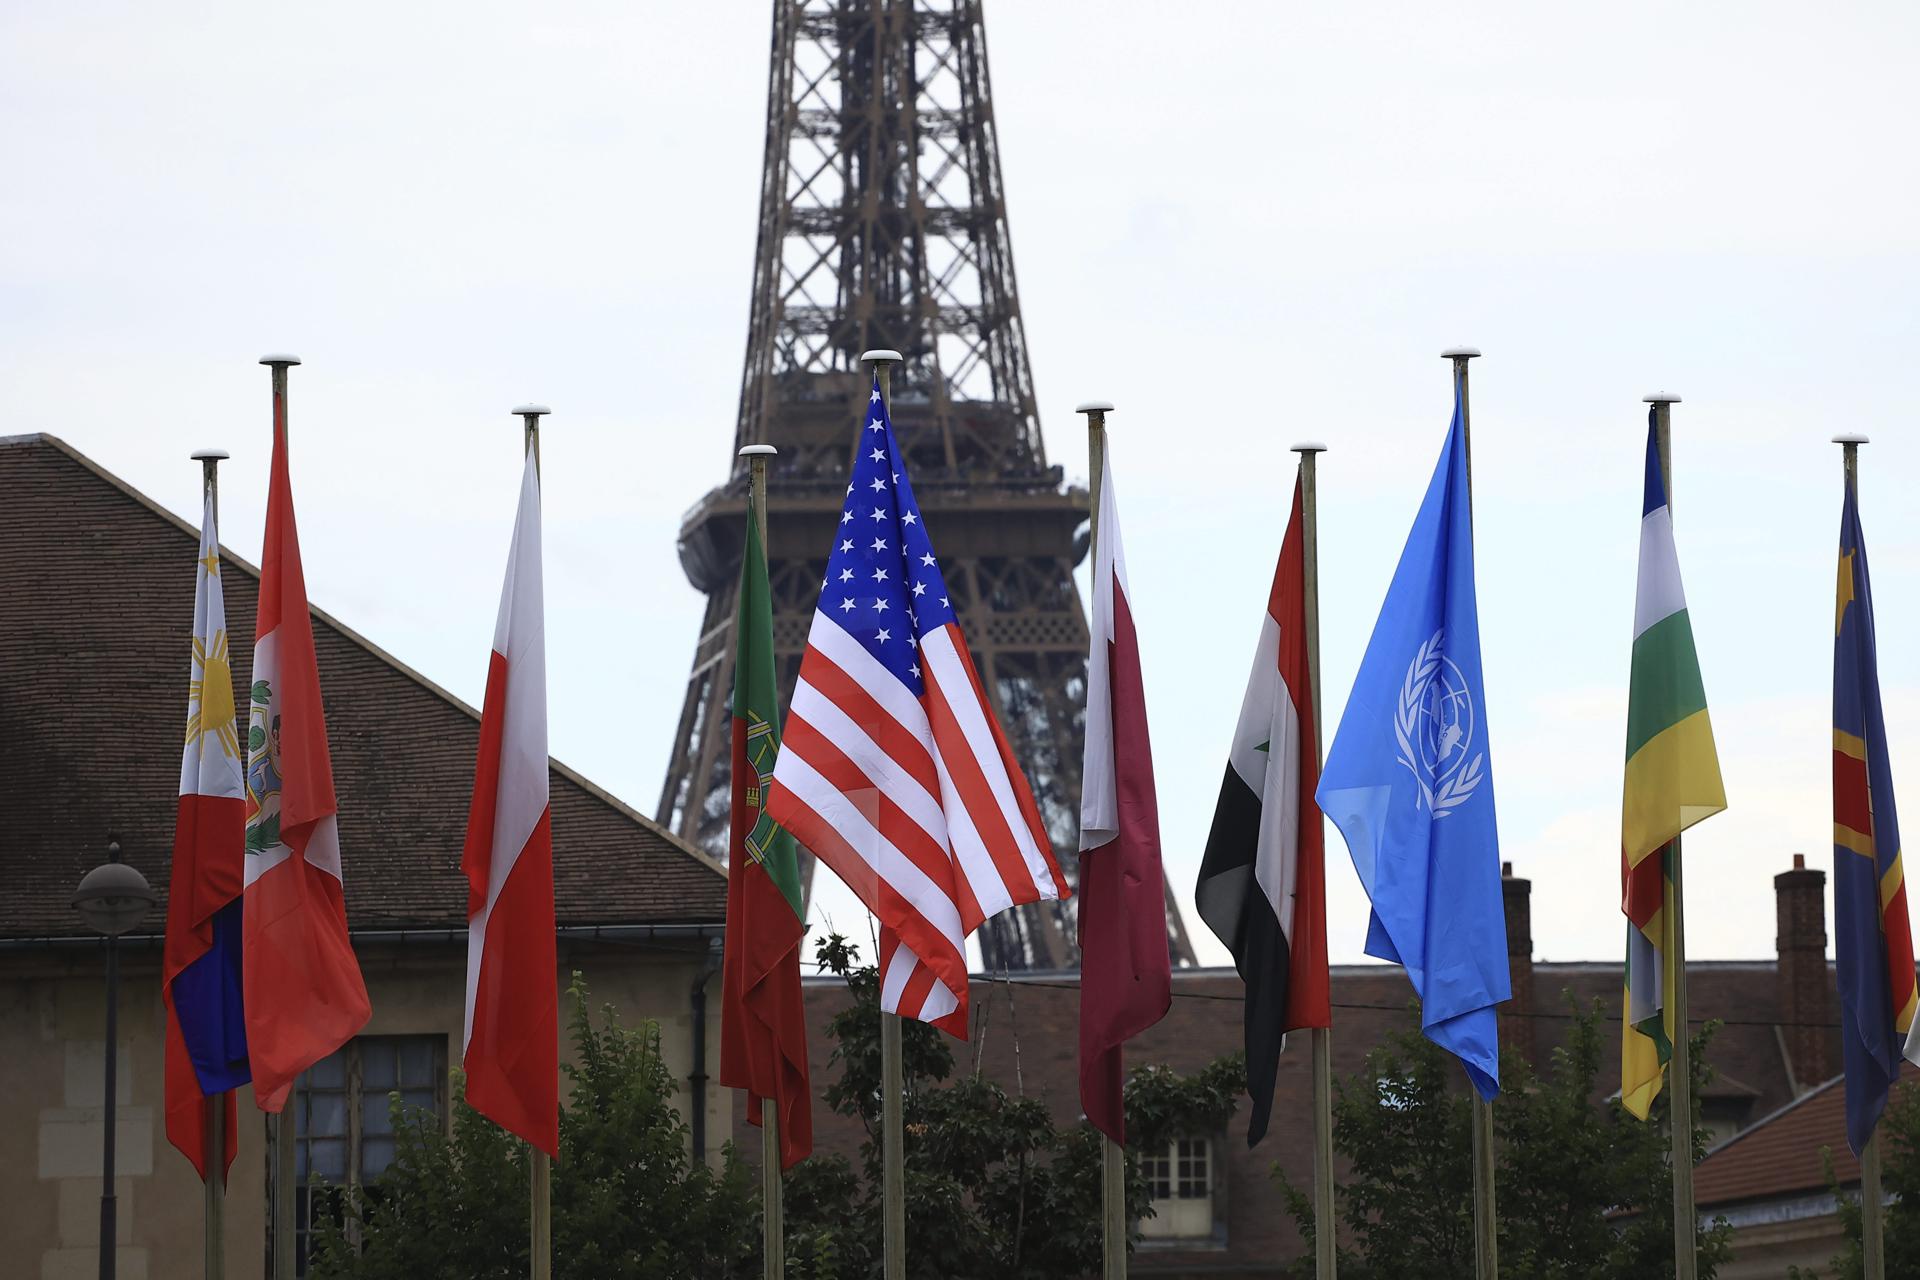 A bandeira dos EUA, ao centro, hasteada durante uma cerimônia na sede da Unesco em Paris, França, nesta terça-feira. EFE/EPA/Aurelien Morissard/POOL